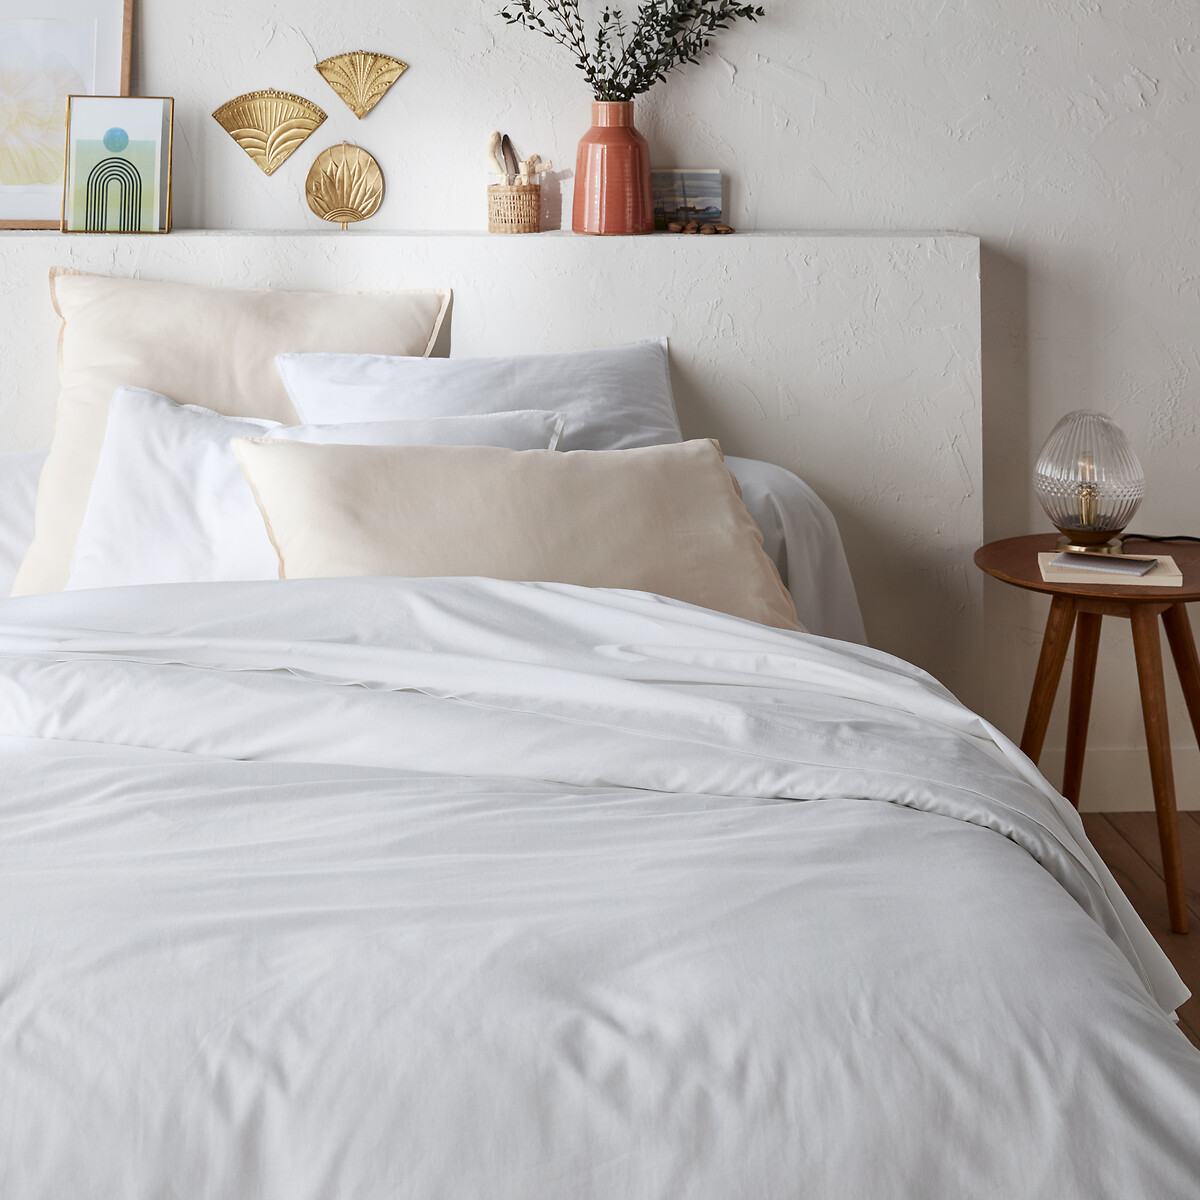 Funda protectora para almohada larga de felpa de algodón blanco La Redoute  Interieurs